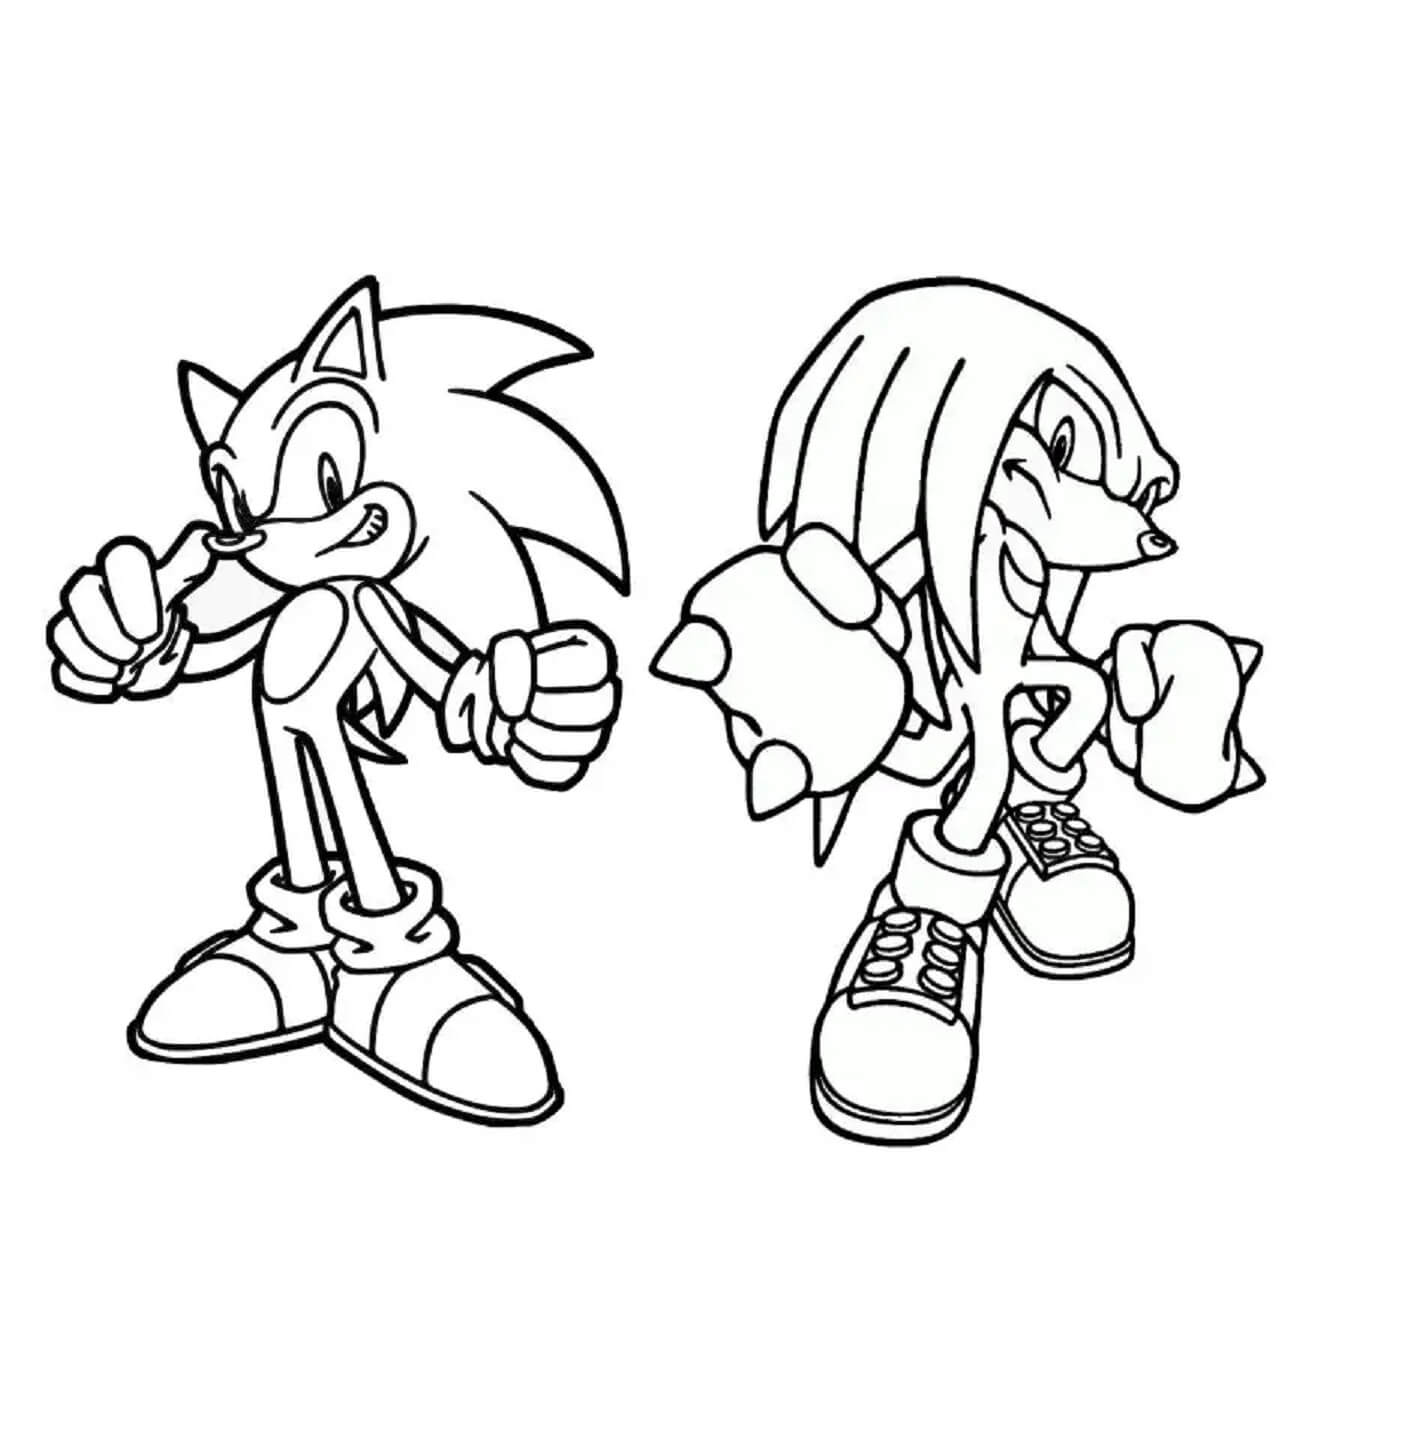 Dibujos de Sonic Y Knuckles para colorear